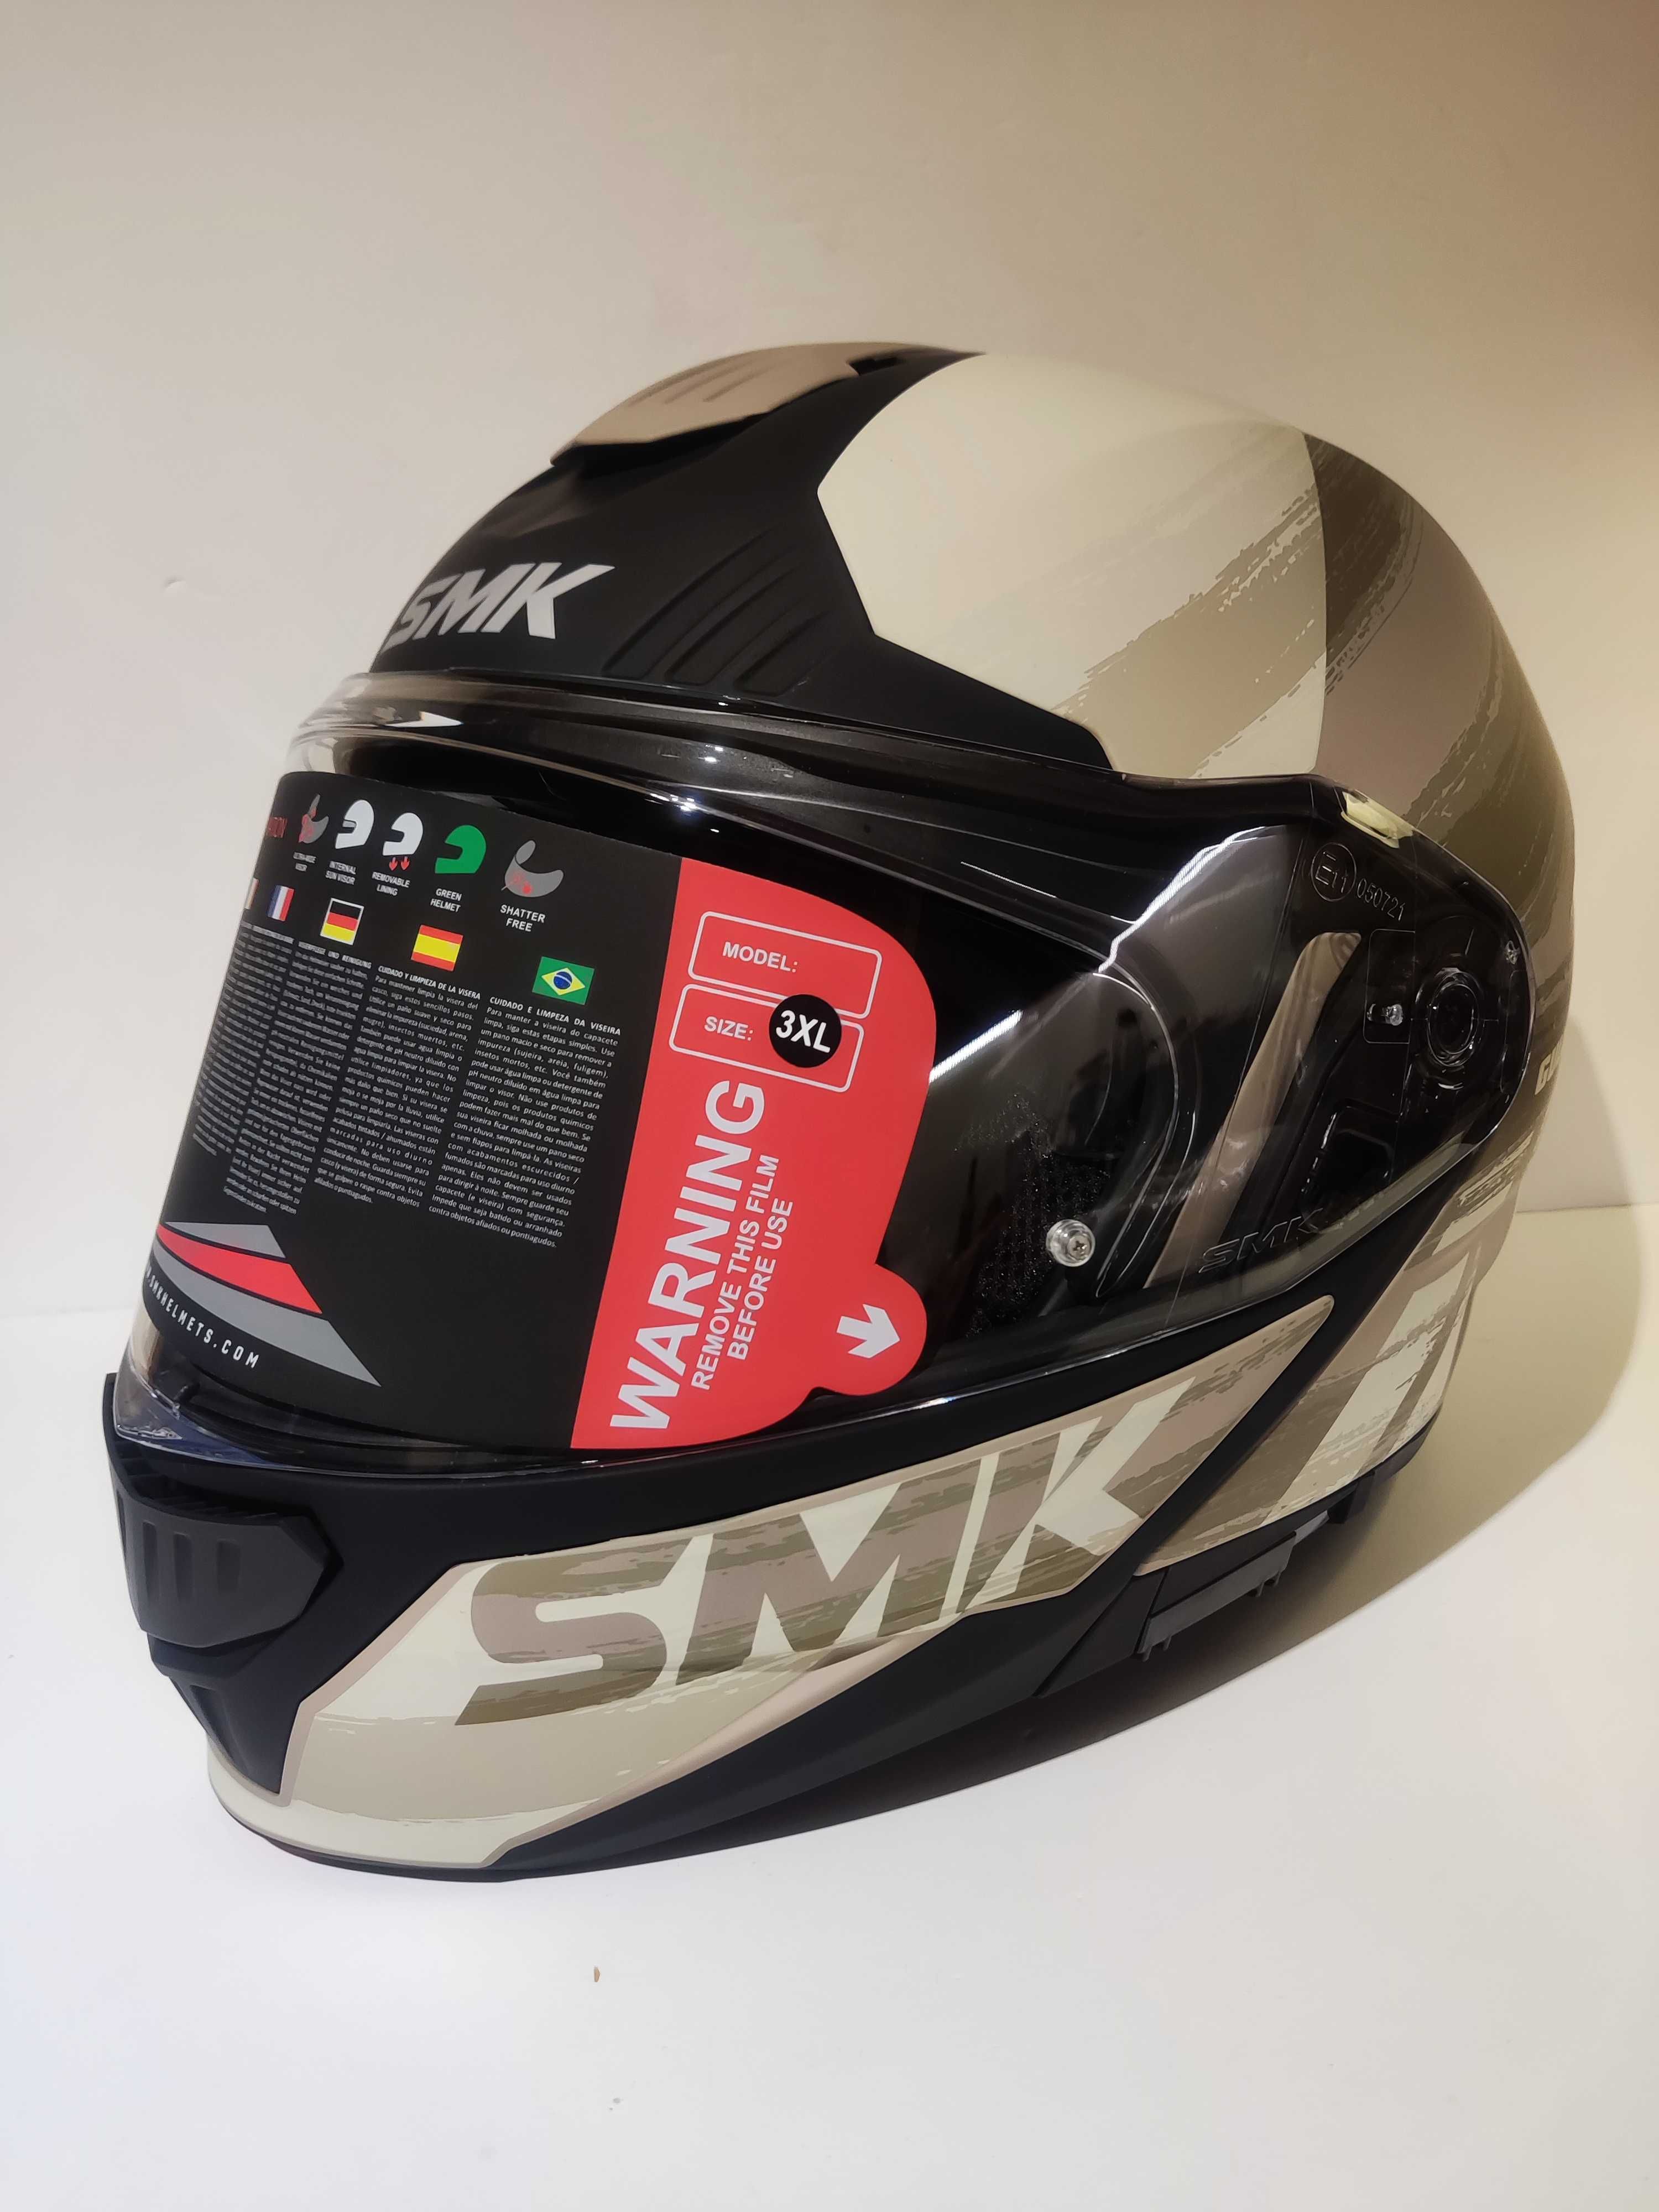 Capacete SMK modular dupla homologação P/J mota scooter novo